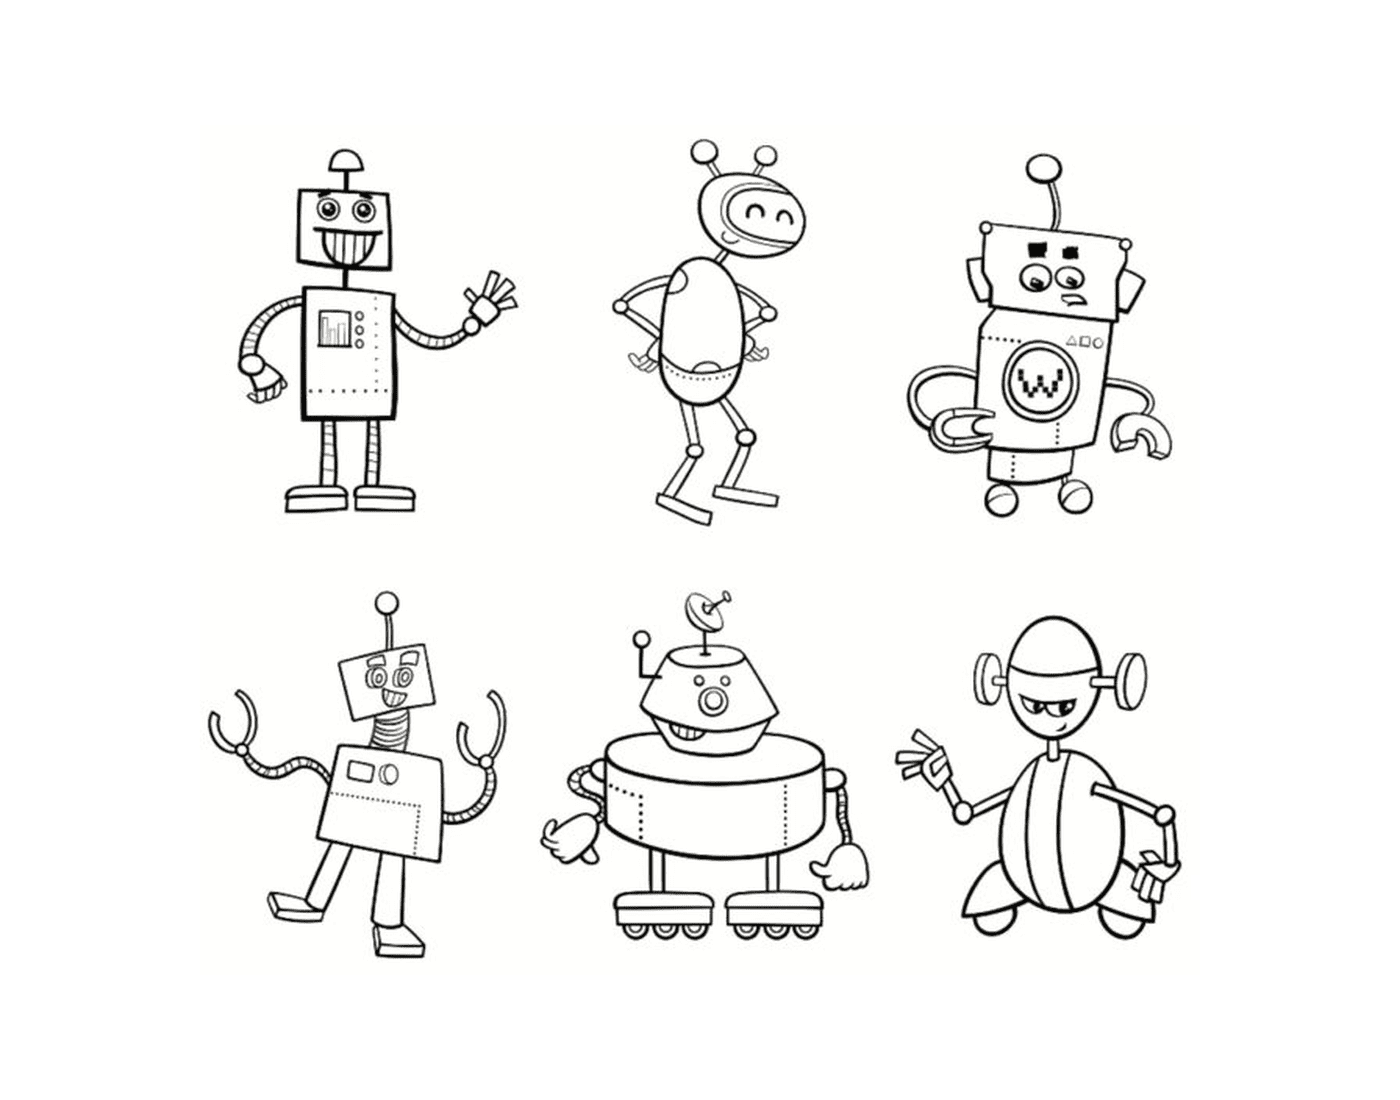  Robot family 